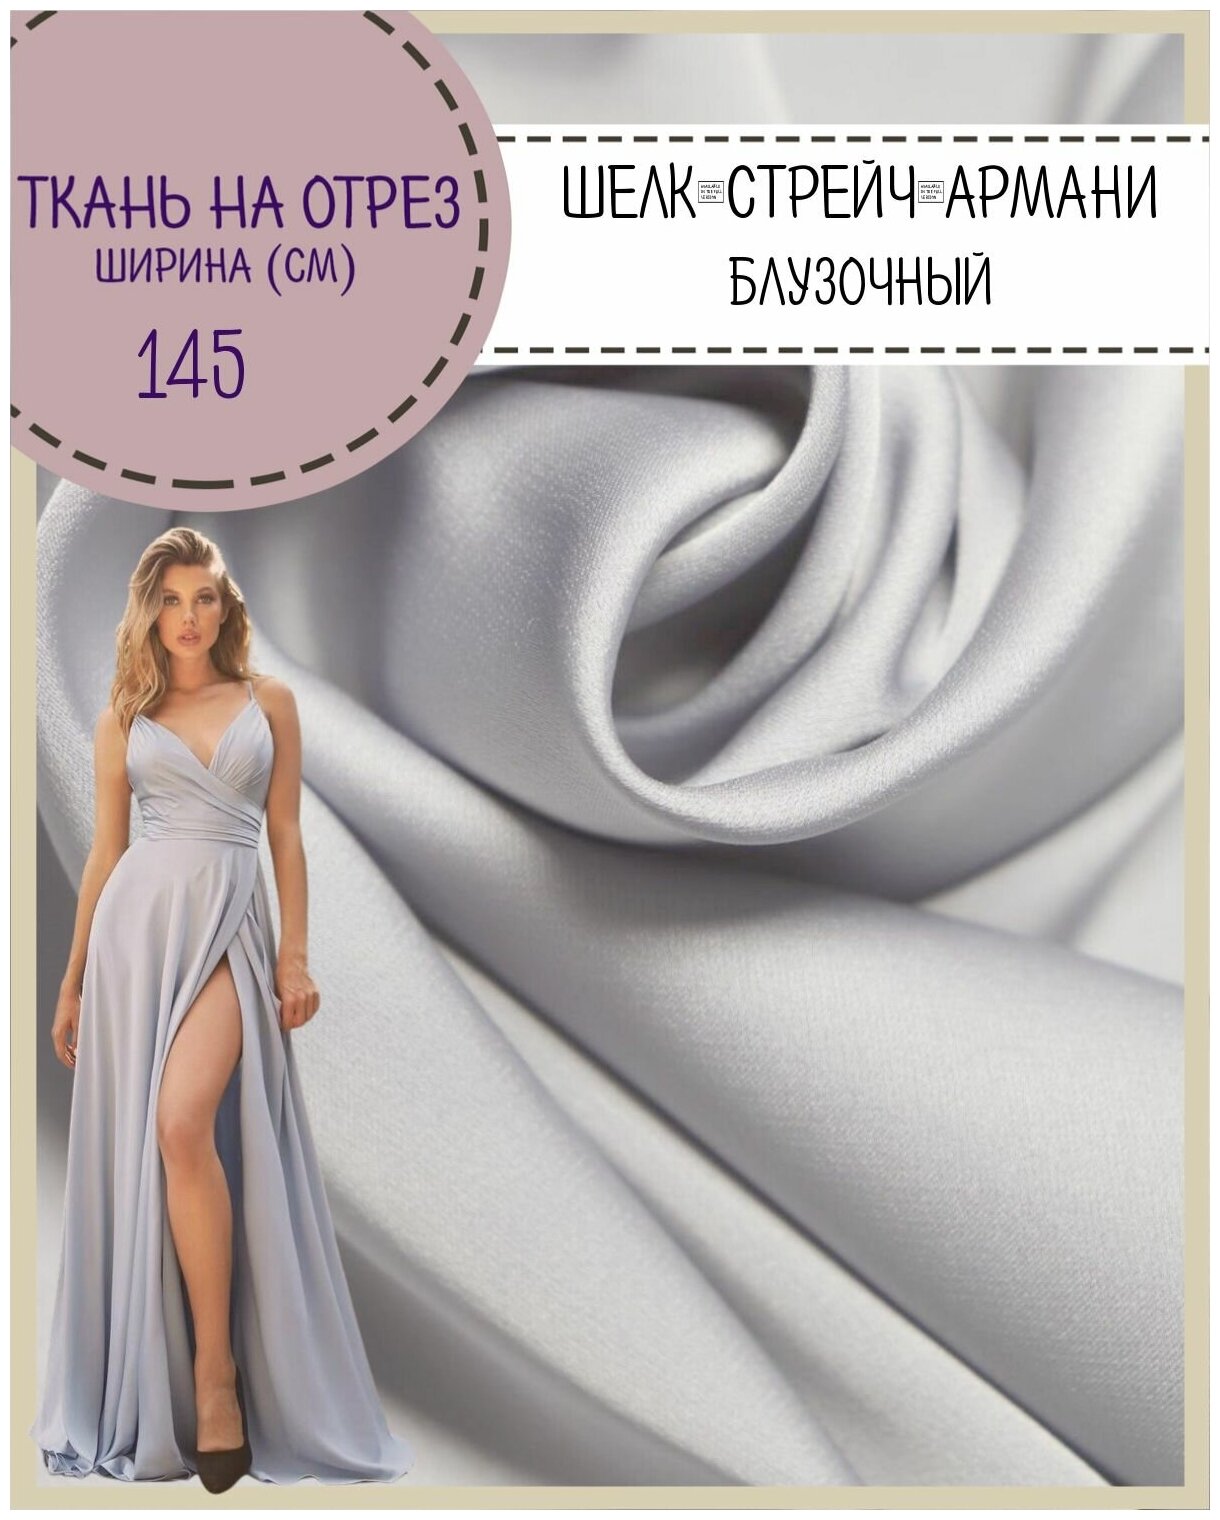 Ткань Шелк "Армани" стрейч/для платья/ блузы, цв. серо-жемчужный, пл. 90 г/кв, ш-145 см, на отрез, цена за пог. метр